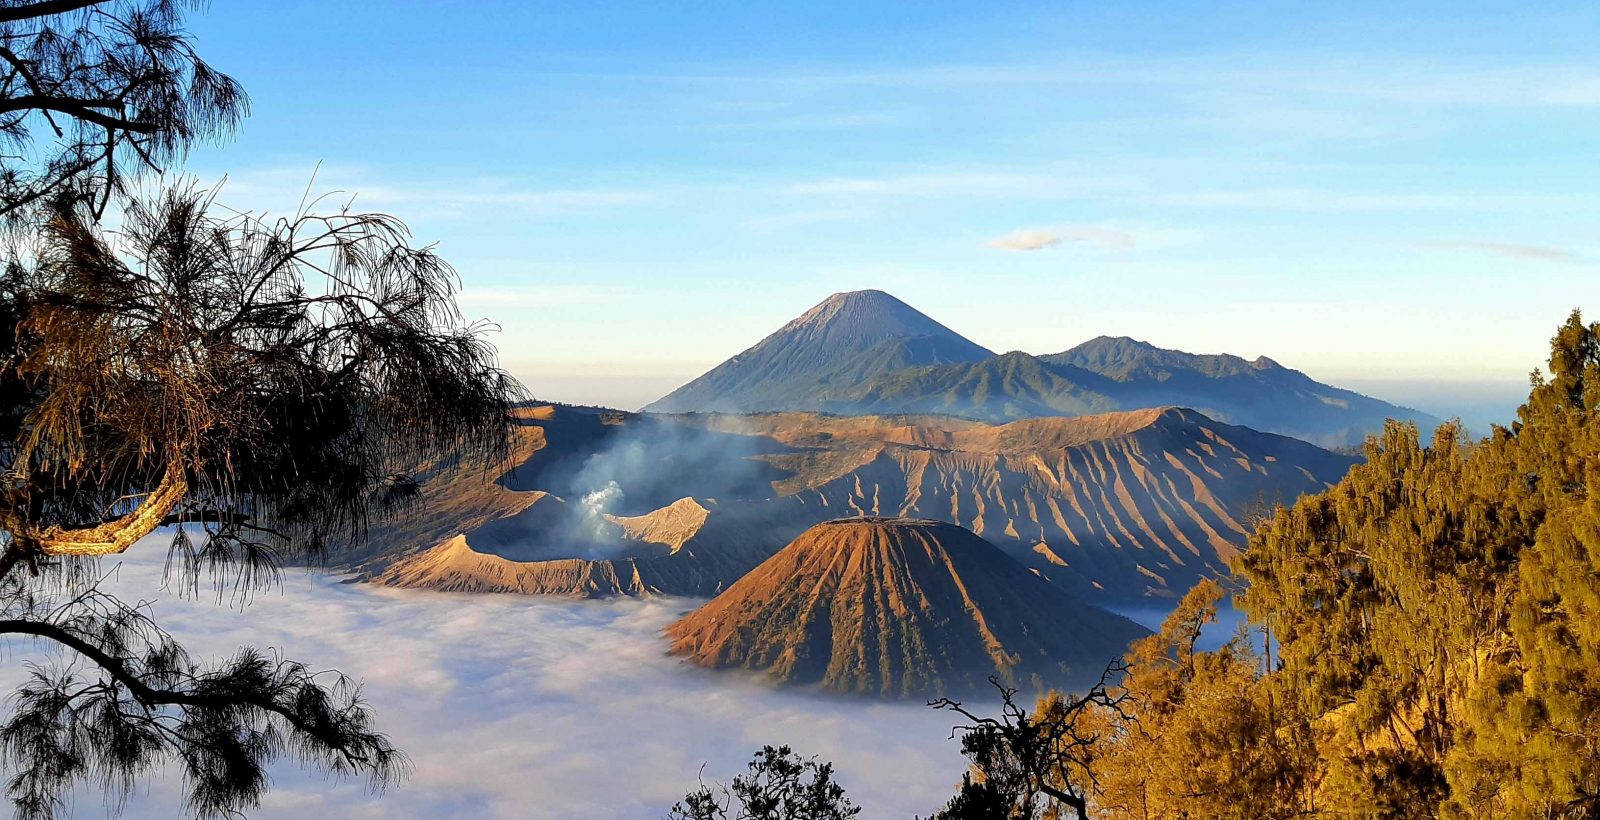 Referensi dan Rekomendasi Tempat Wisata di Indonesia: Keindahan Gunung Bromo